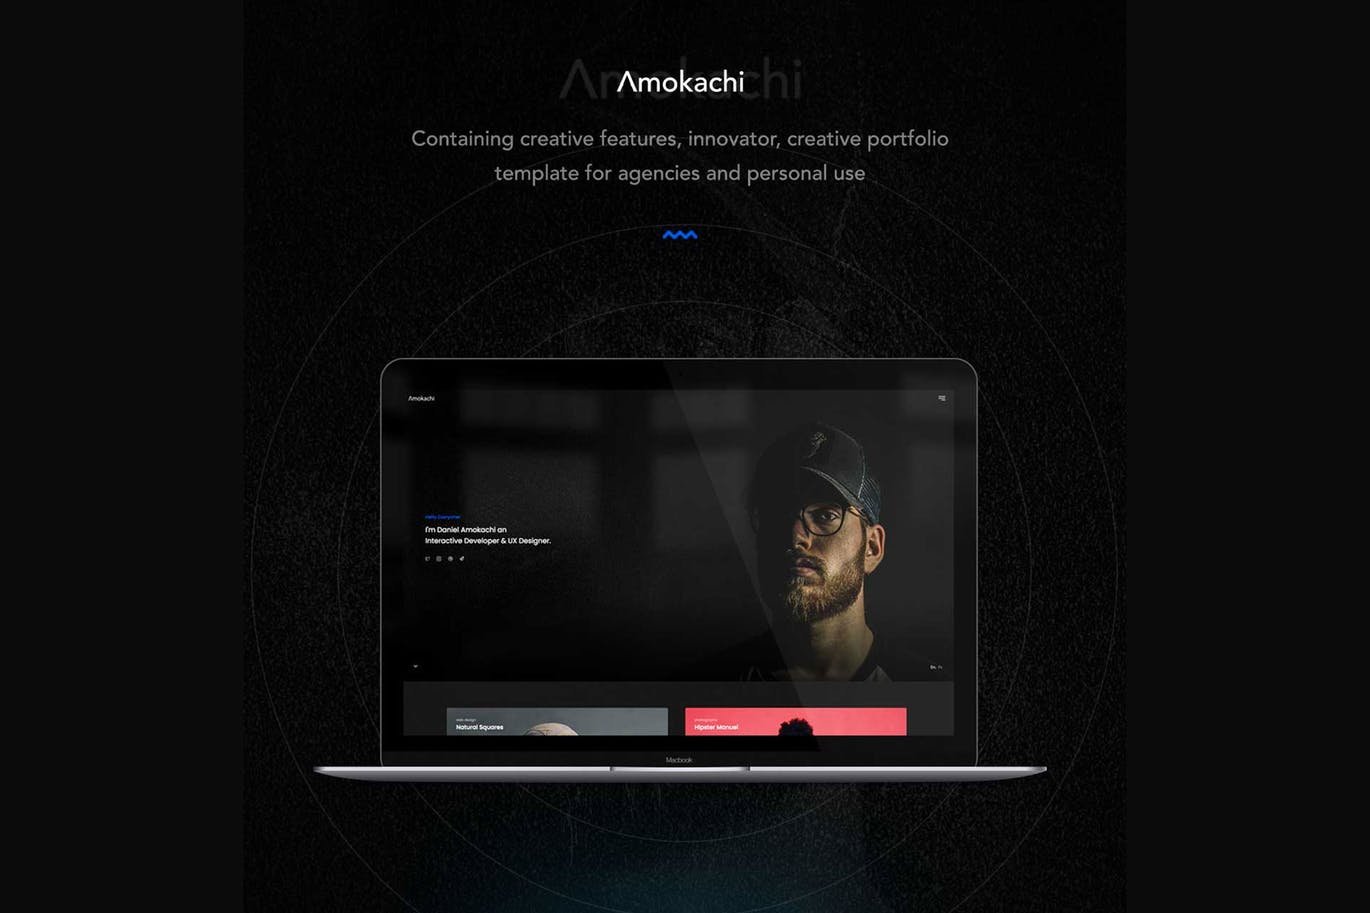 创意设计代理公司/工作室网站设计HTML模板素材库精选 Amokachi – Creative Portfolio HTML Template插图